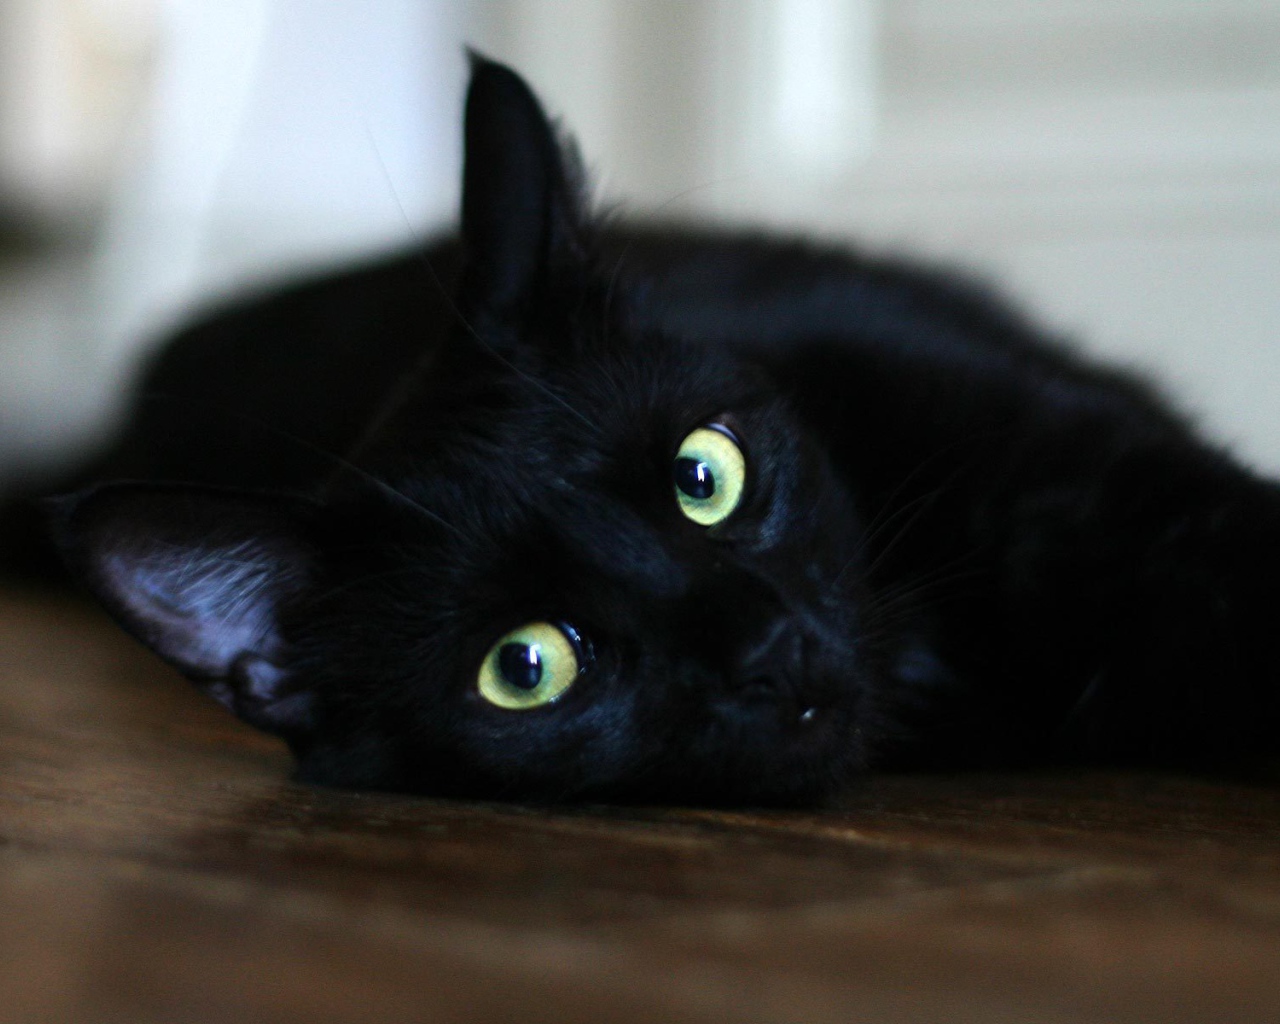 Чёрный кот отдыхает на полу